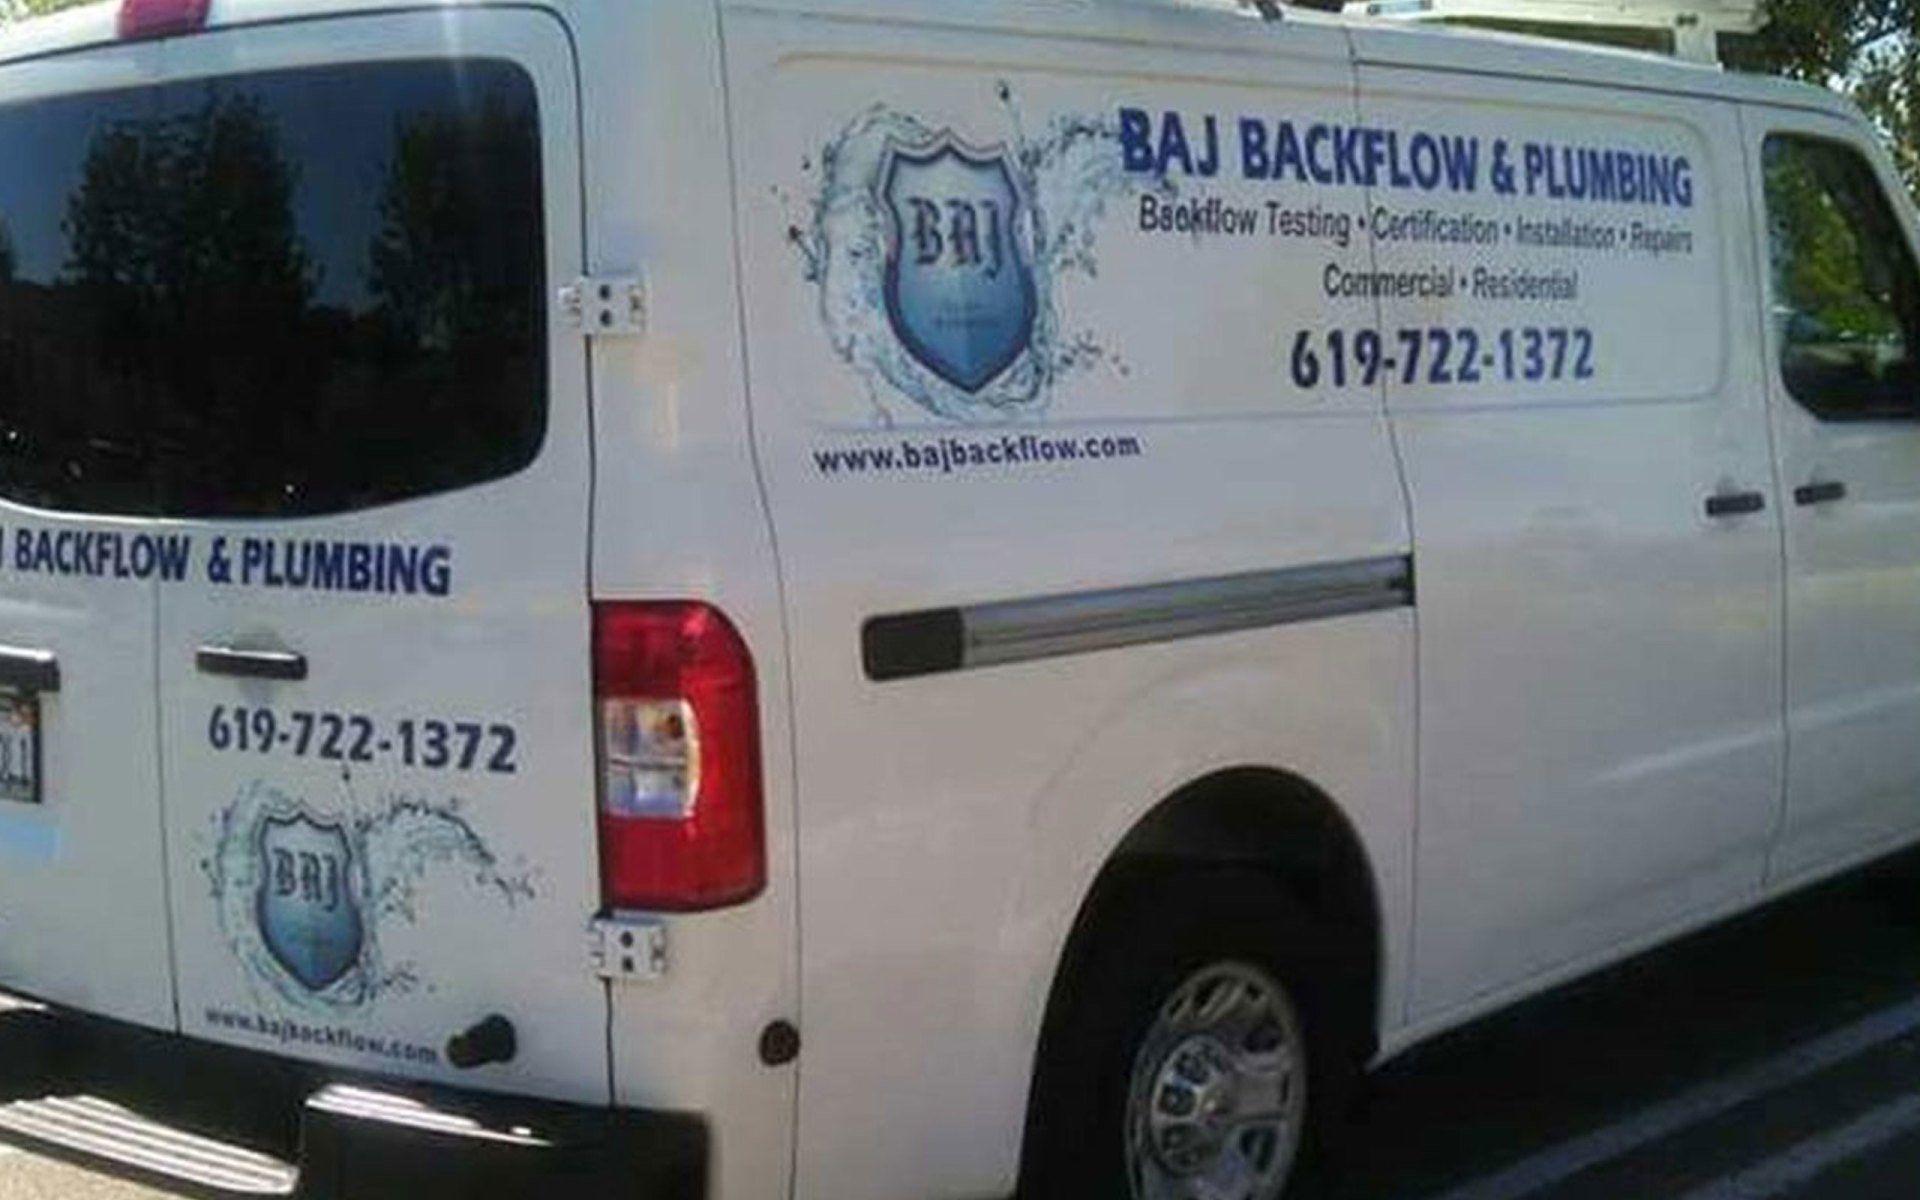 BAJ Backflow & Plumbing van